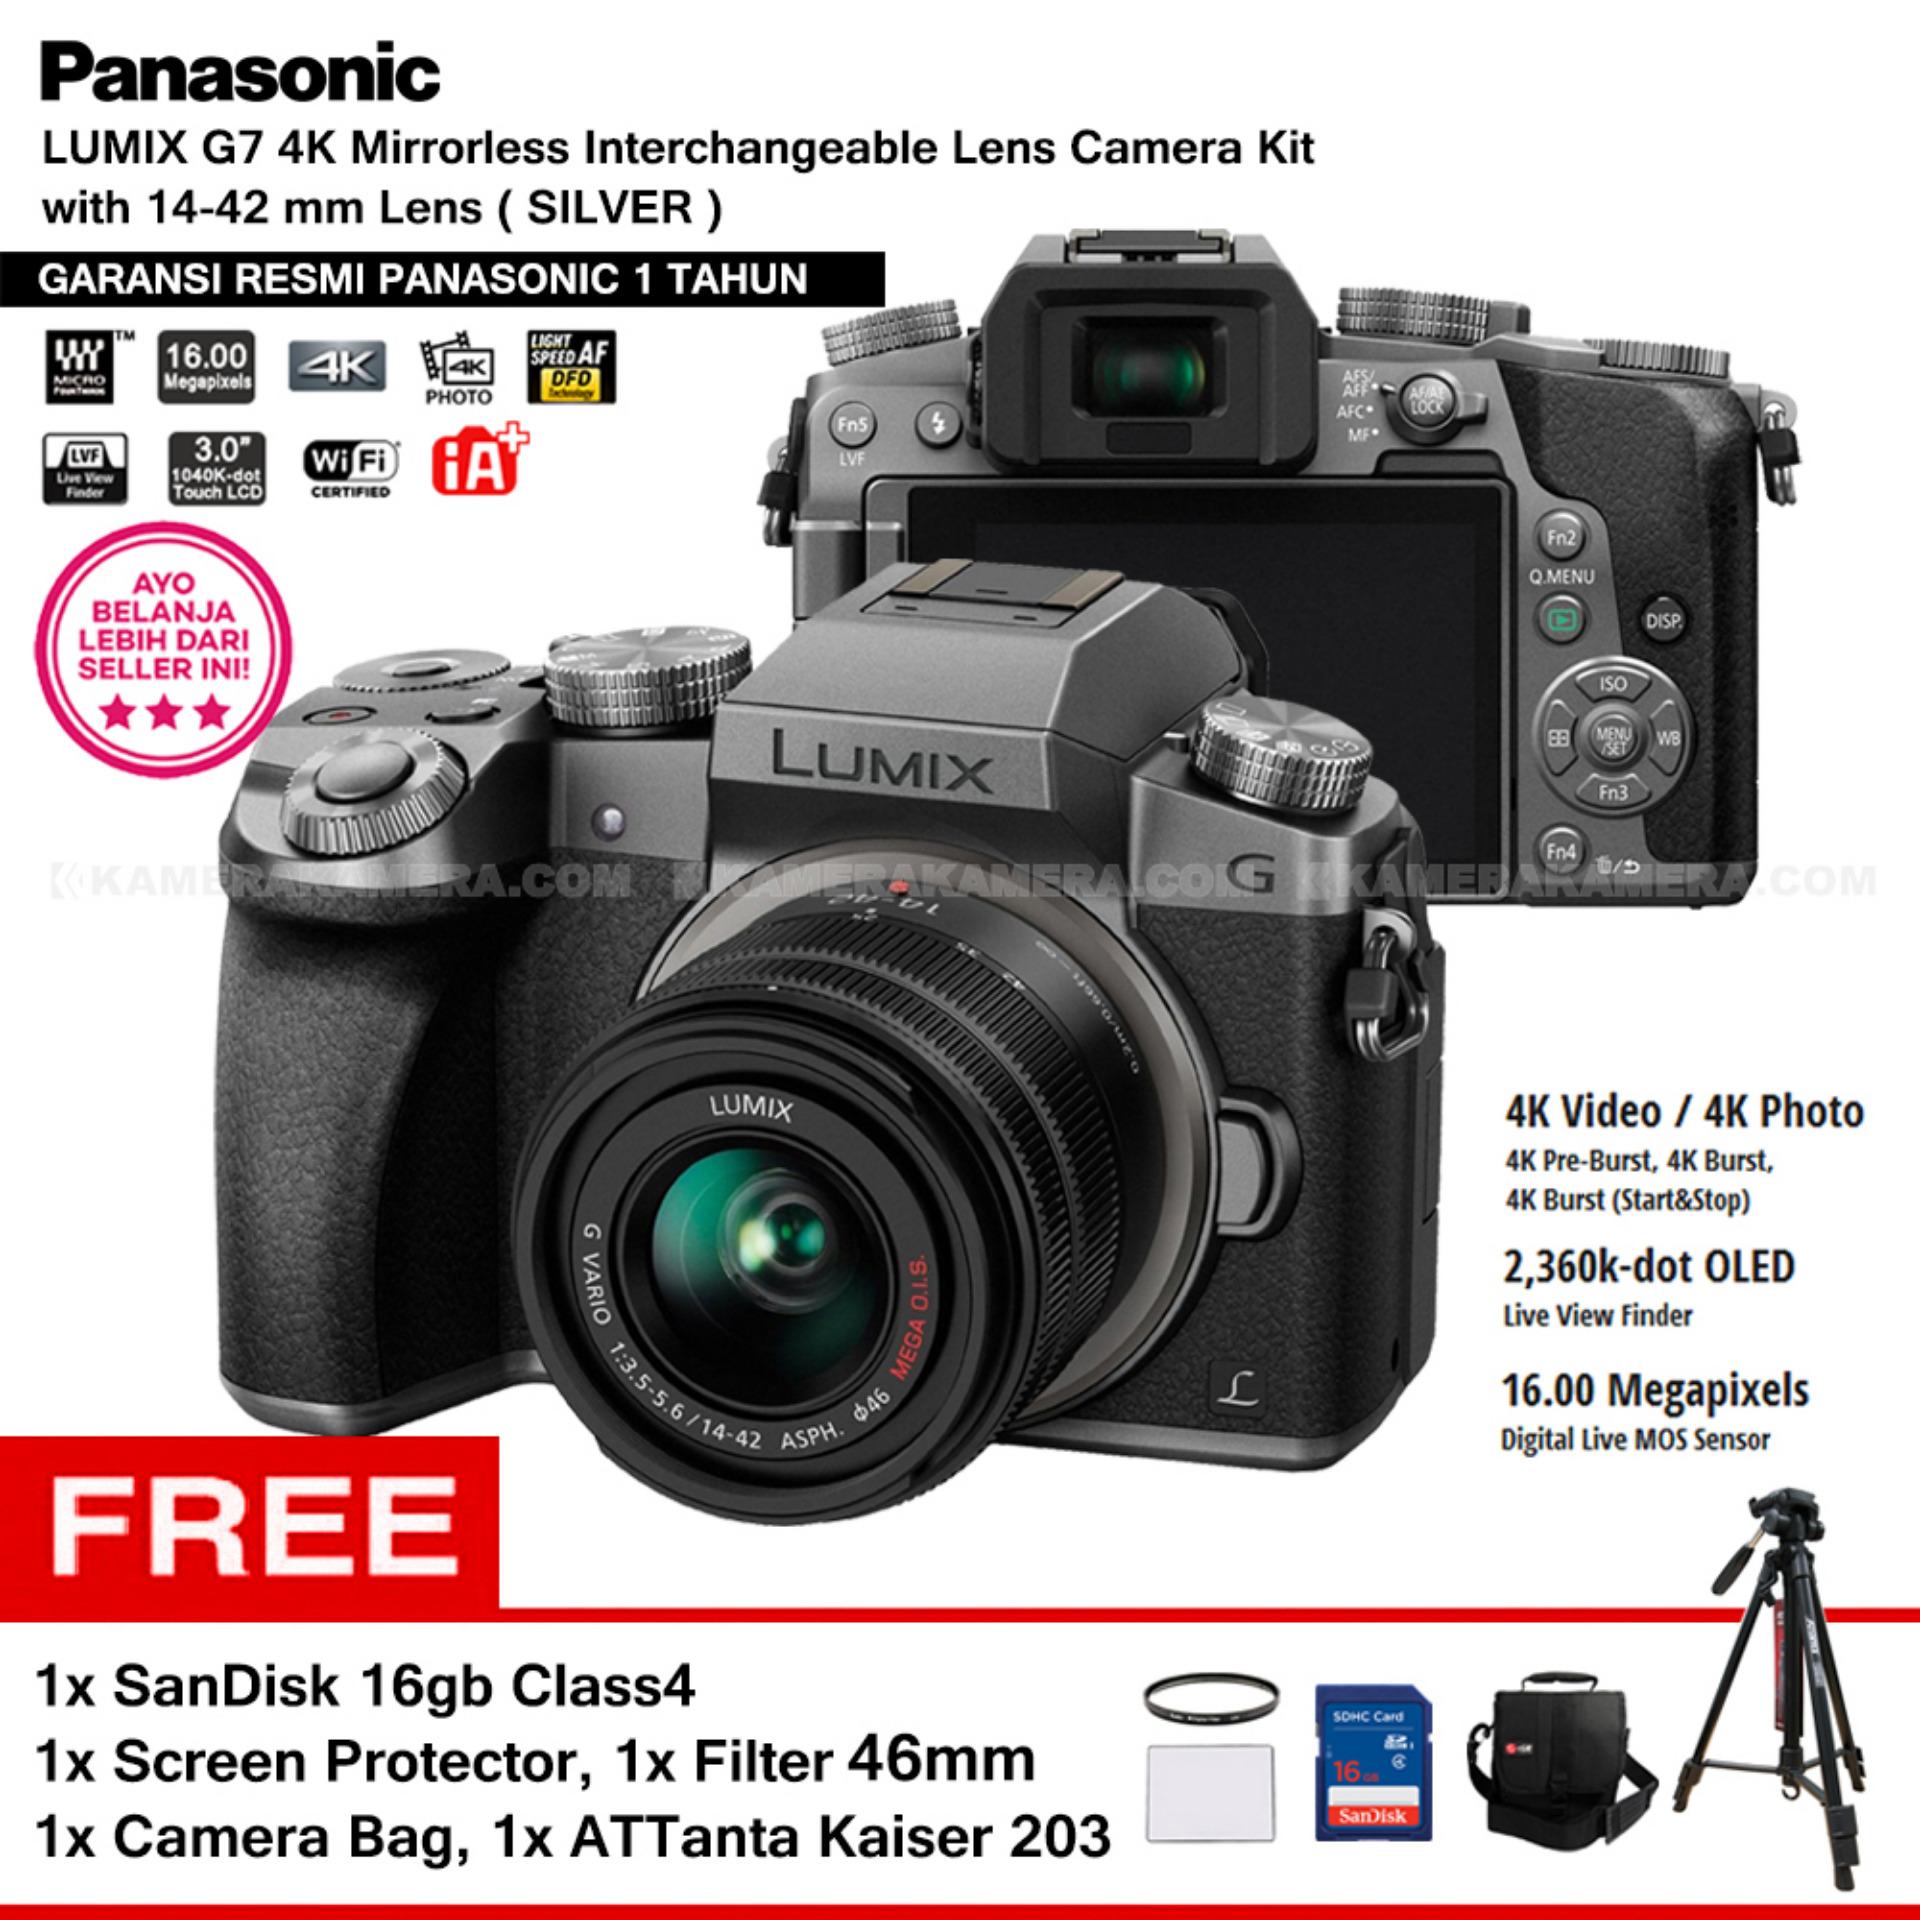 Panasonic DMC-G7K Silver - Kamera Mirrorless G7 WiFi 4K 16MP + Lumix G Vario 14-42mm/ F3.5-5.6 II ASPH (Garansi Resmi) + Screen Protector + SanDisk 16GB + Filter 46mm + Camera Bag + ATTanta Kaiser 203